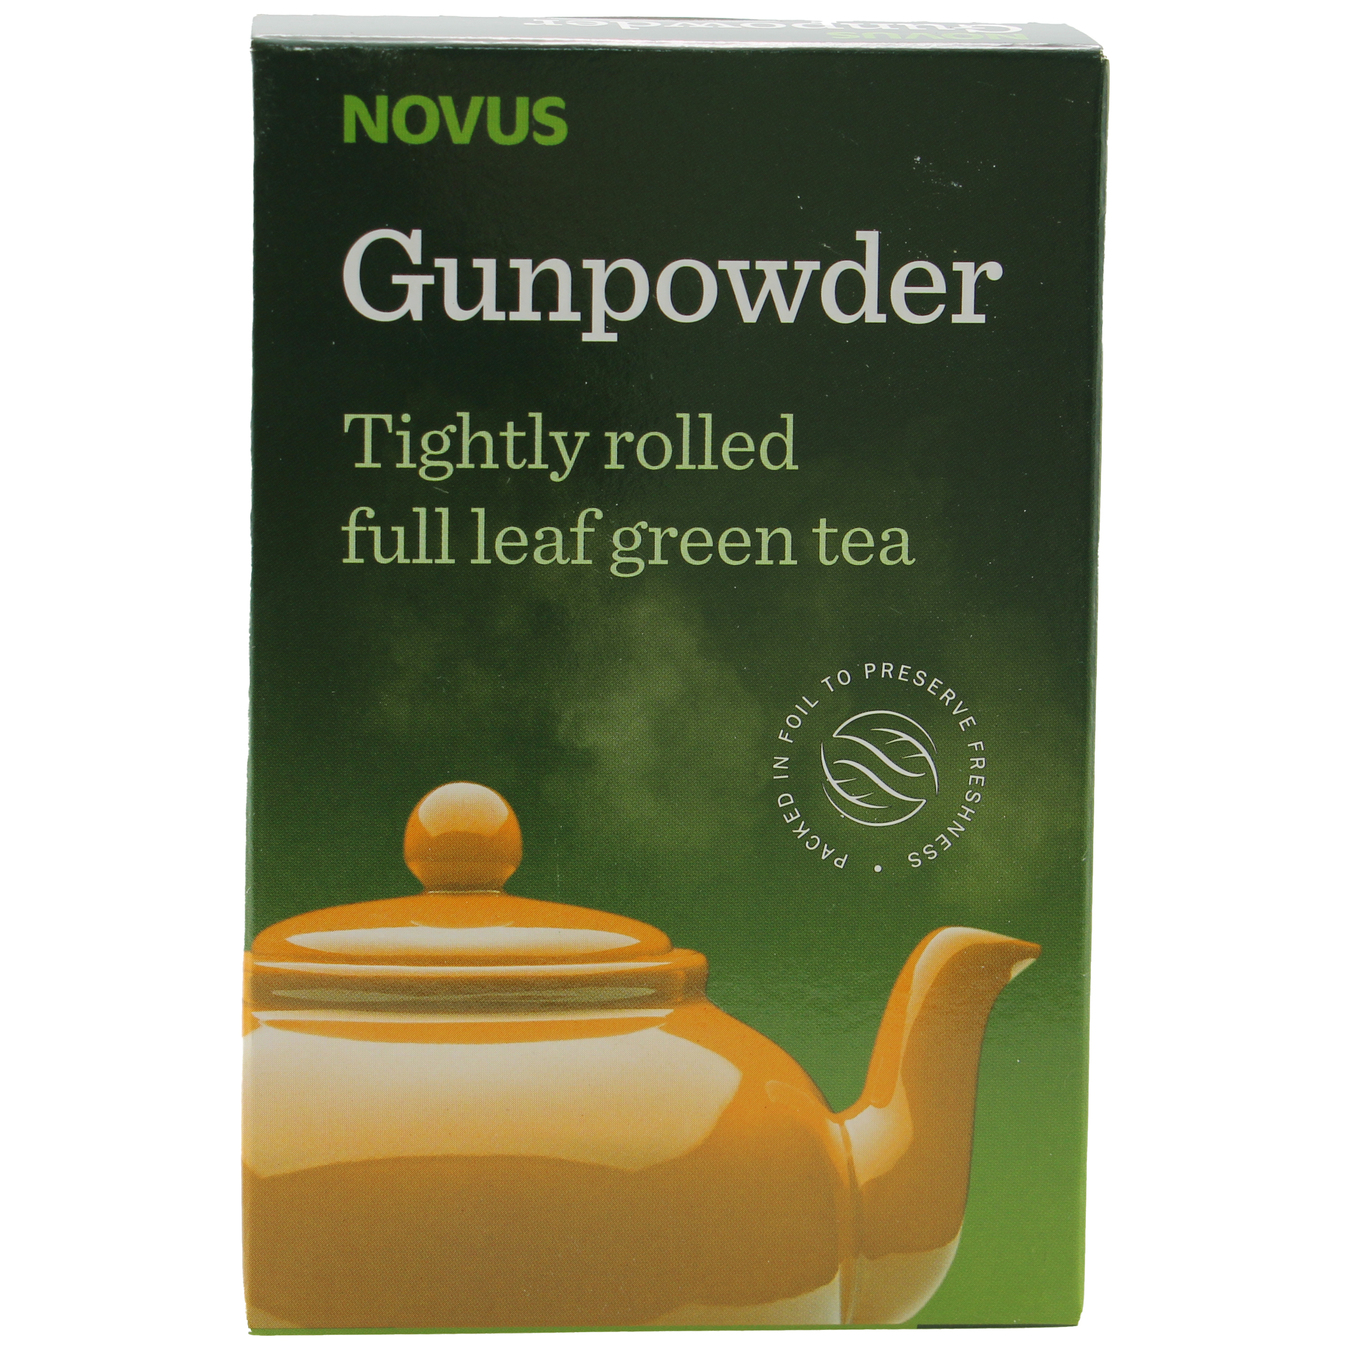 Чай зеленый Novus ганпаудер 100г